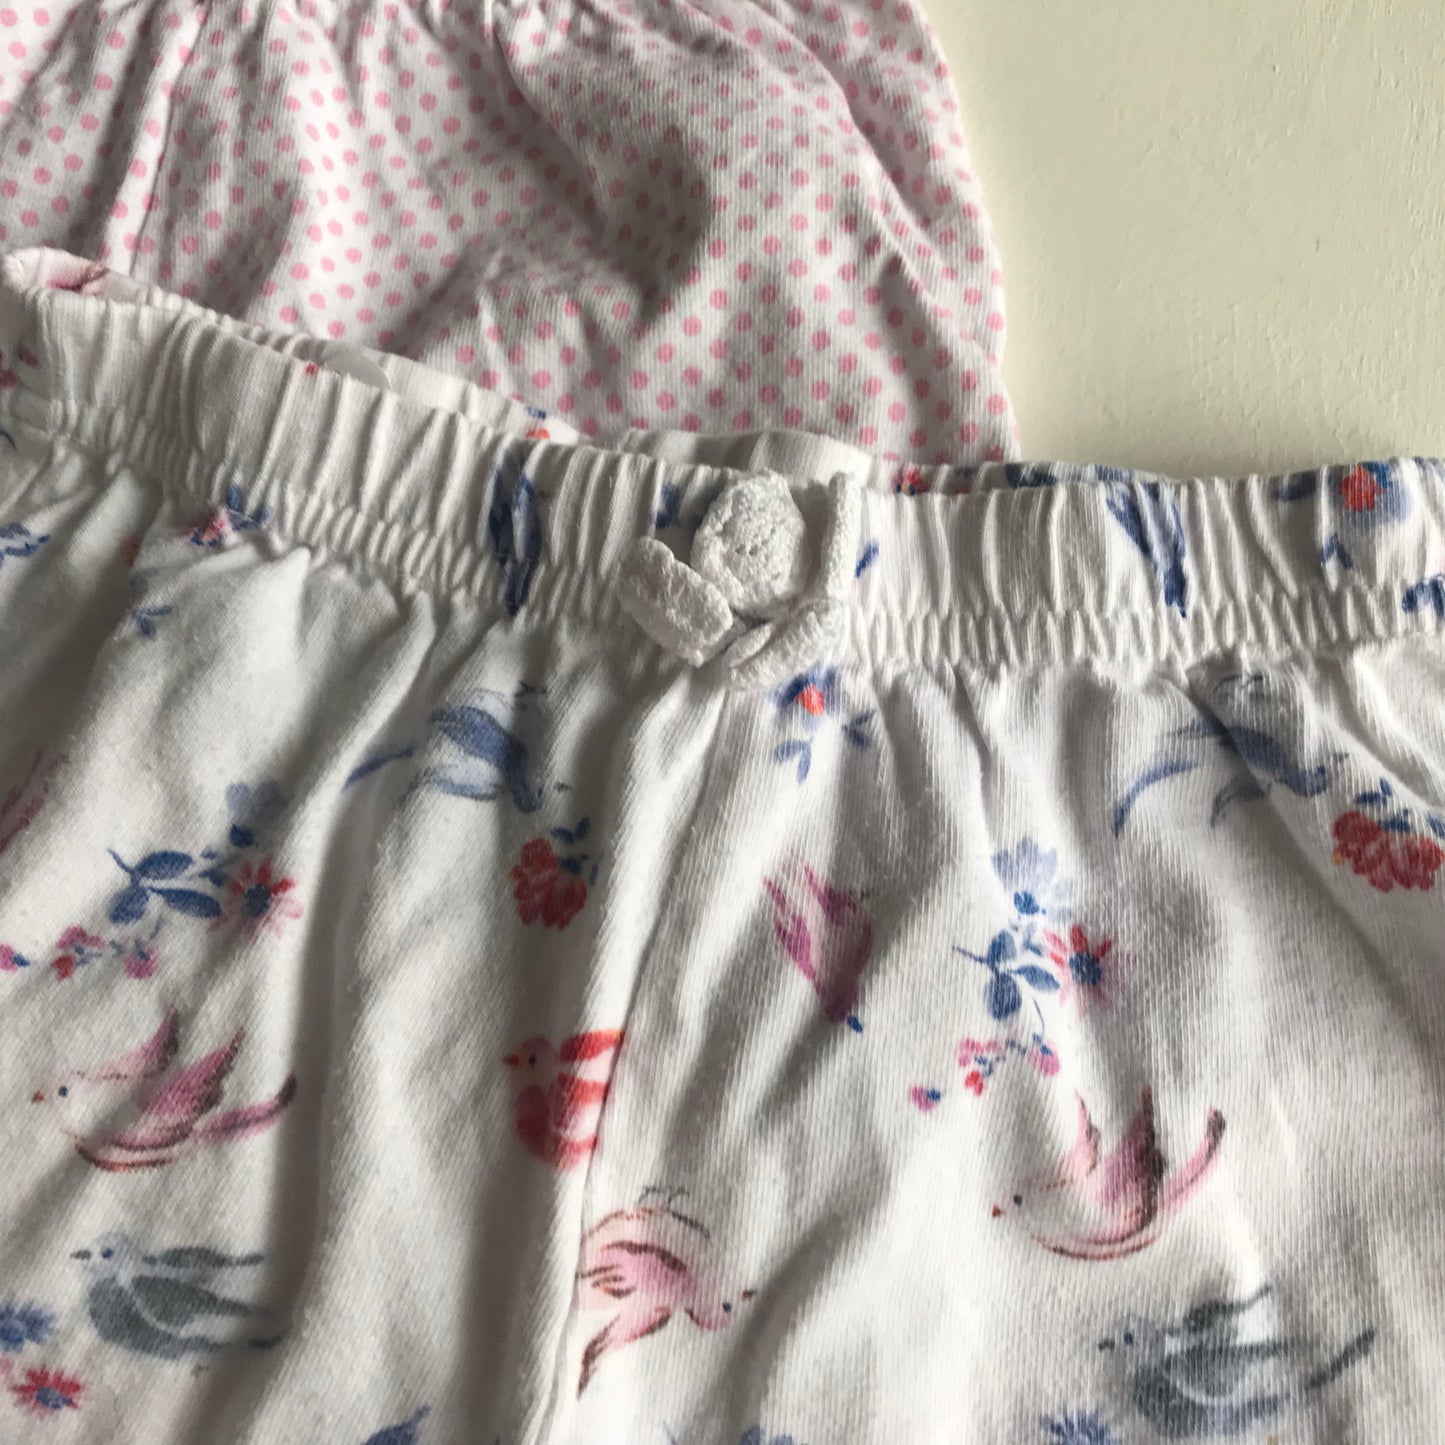 Bundle - Shorts - Age 6